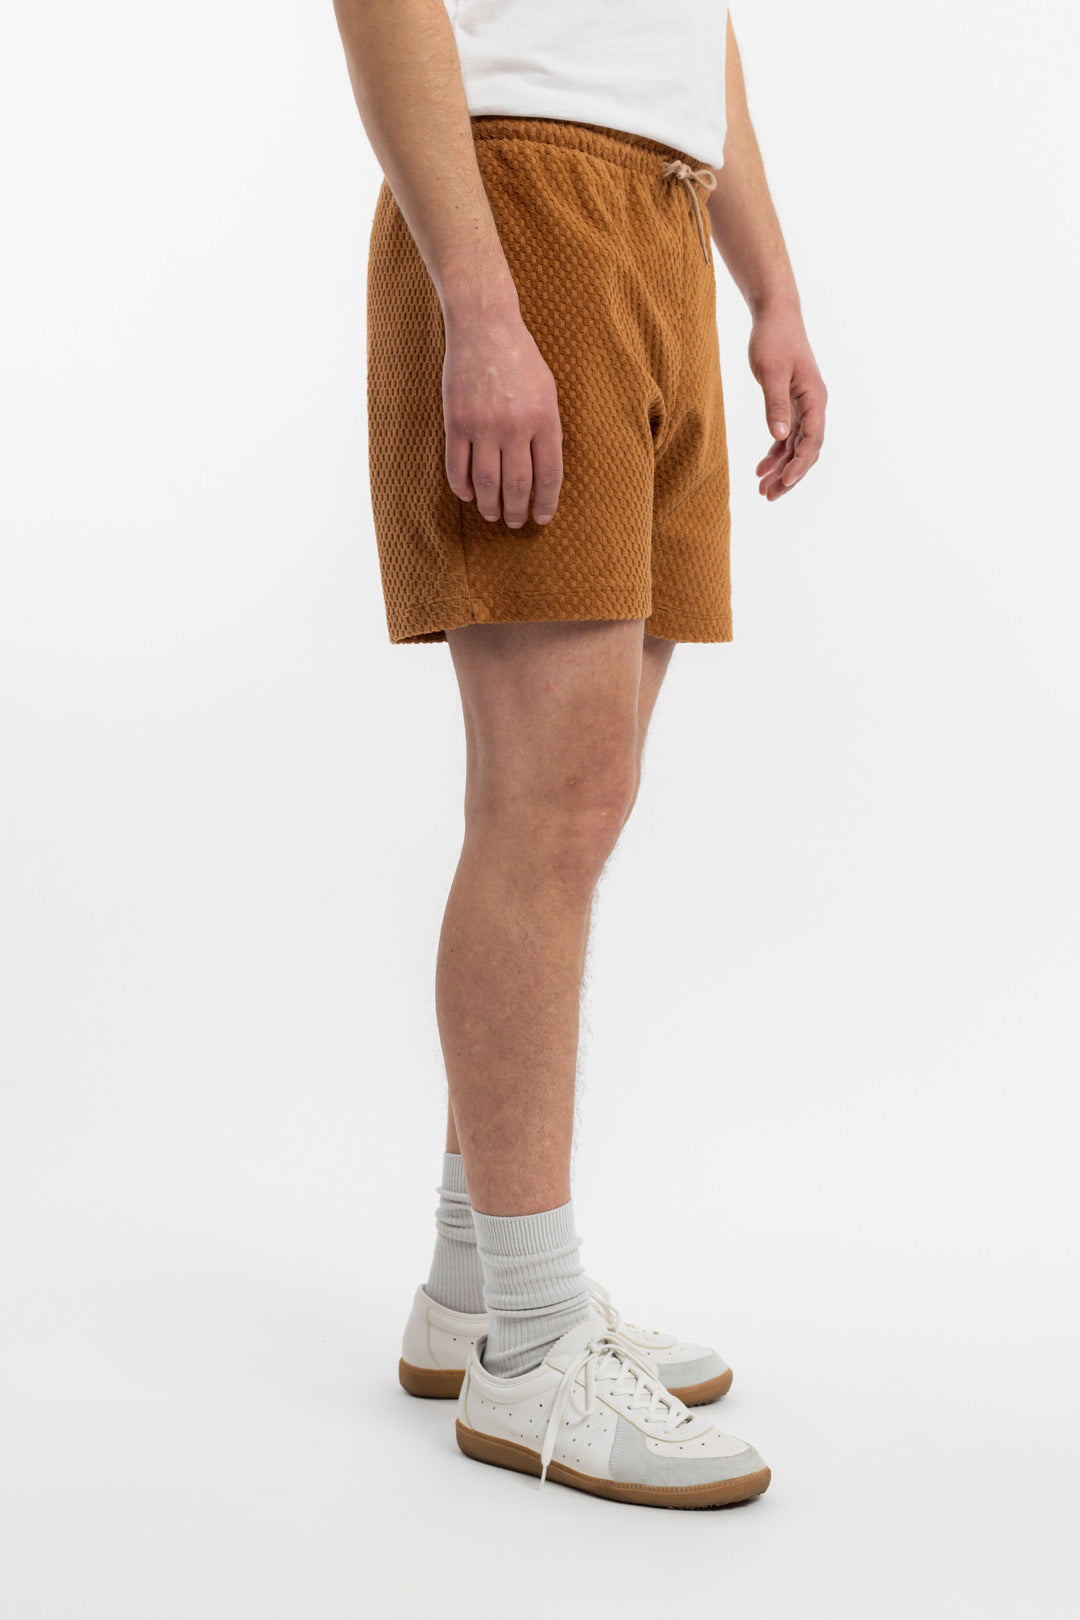 Karamellfarbene kurze Hose aus 100% Bio-Baumwolle-Jersey von Rotholz